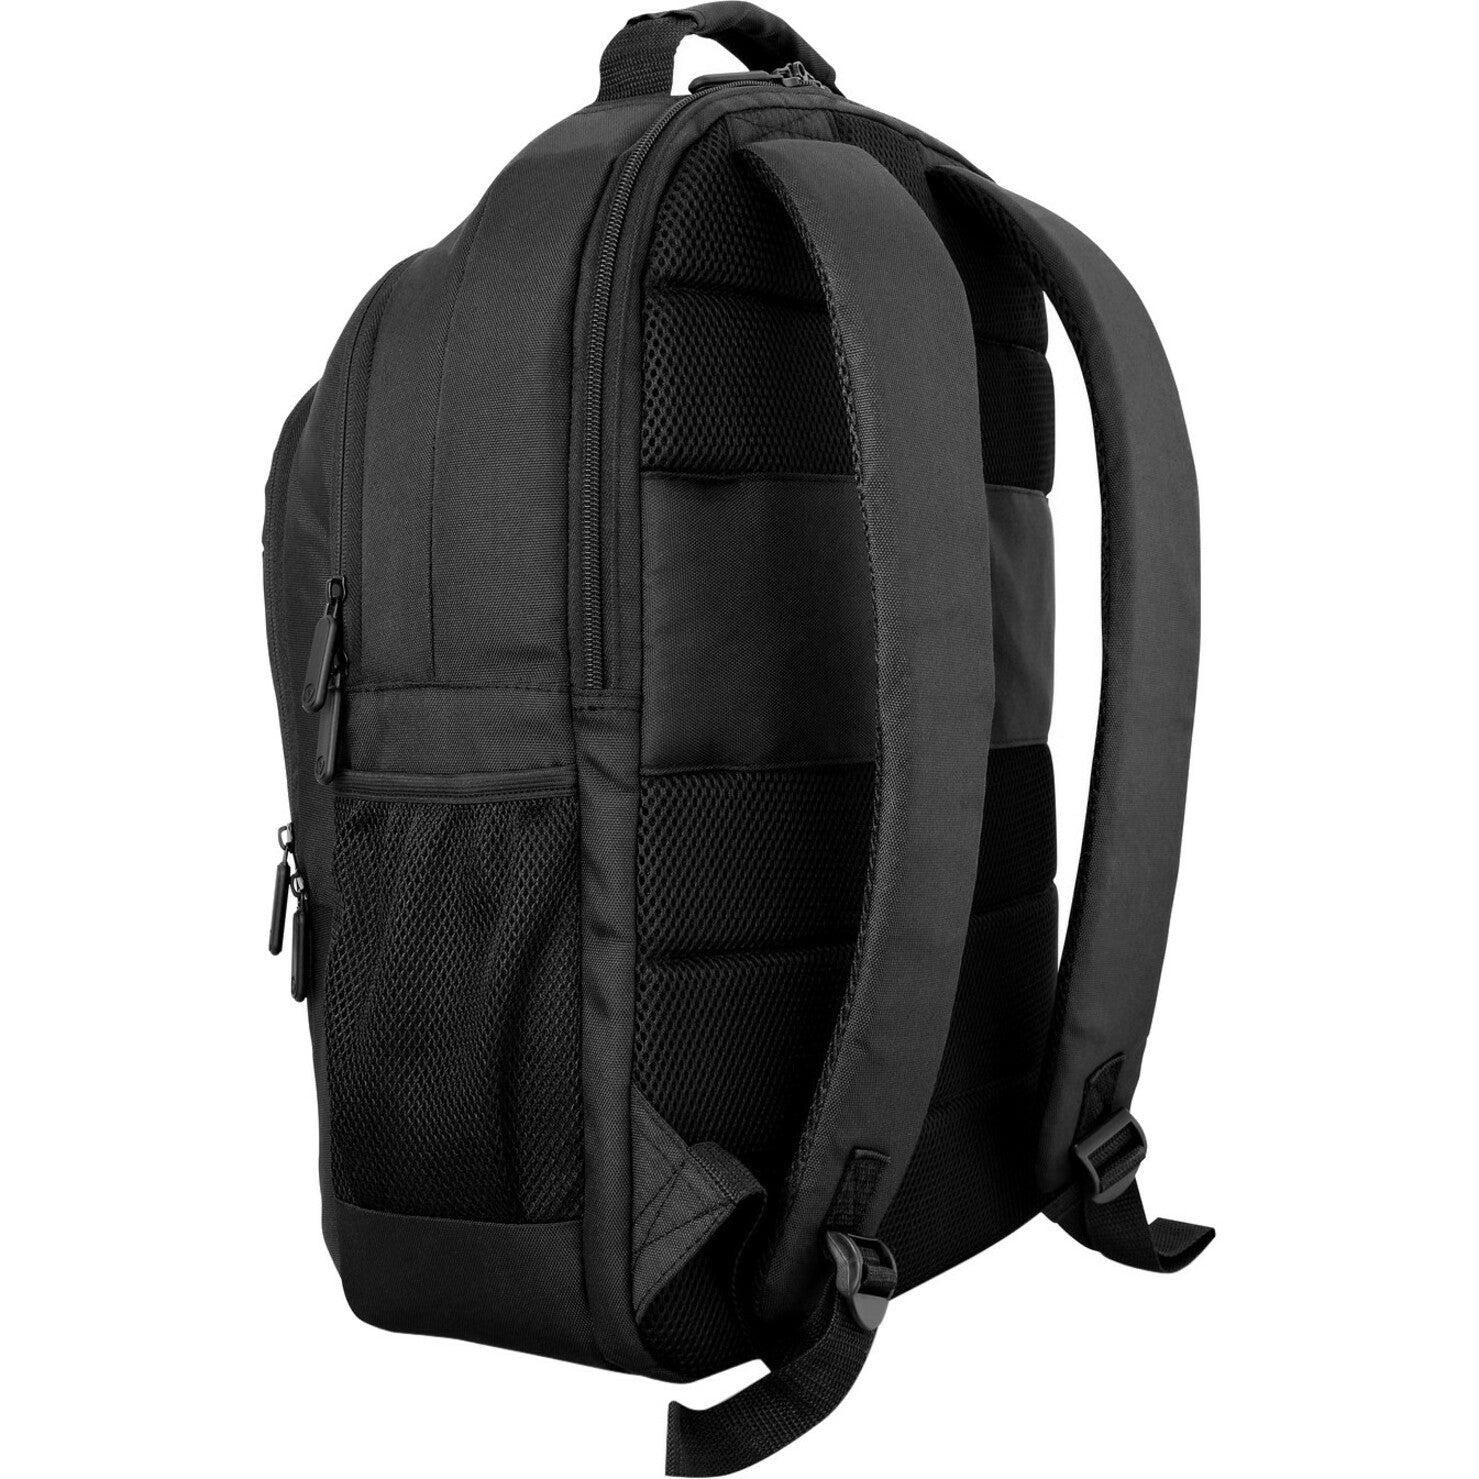 V7 Professional 16" Laptop Backpack - Black [Discontinued]